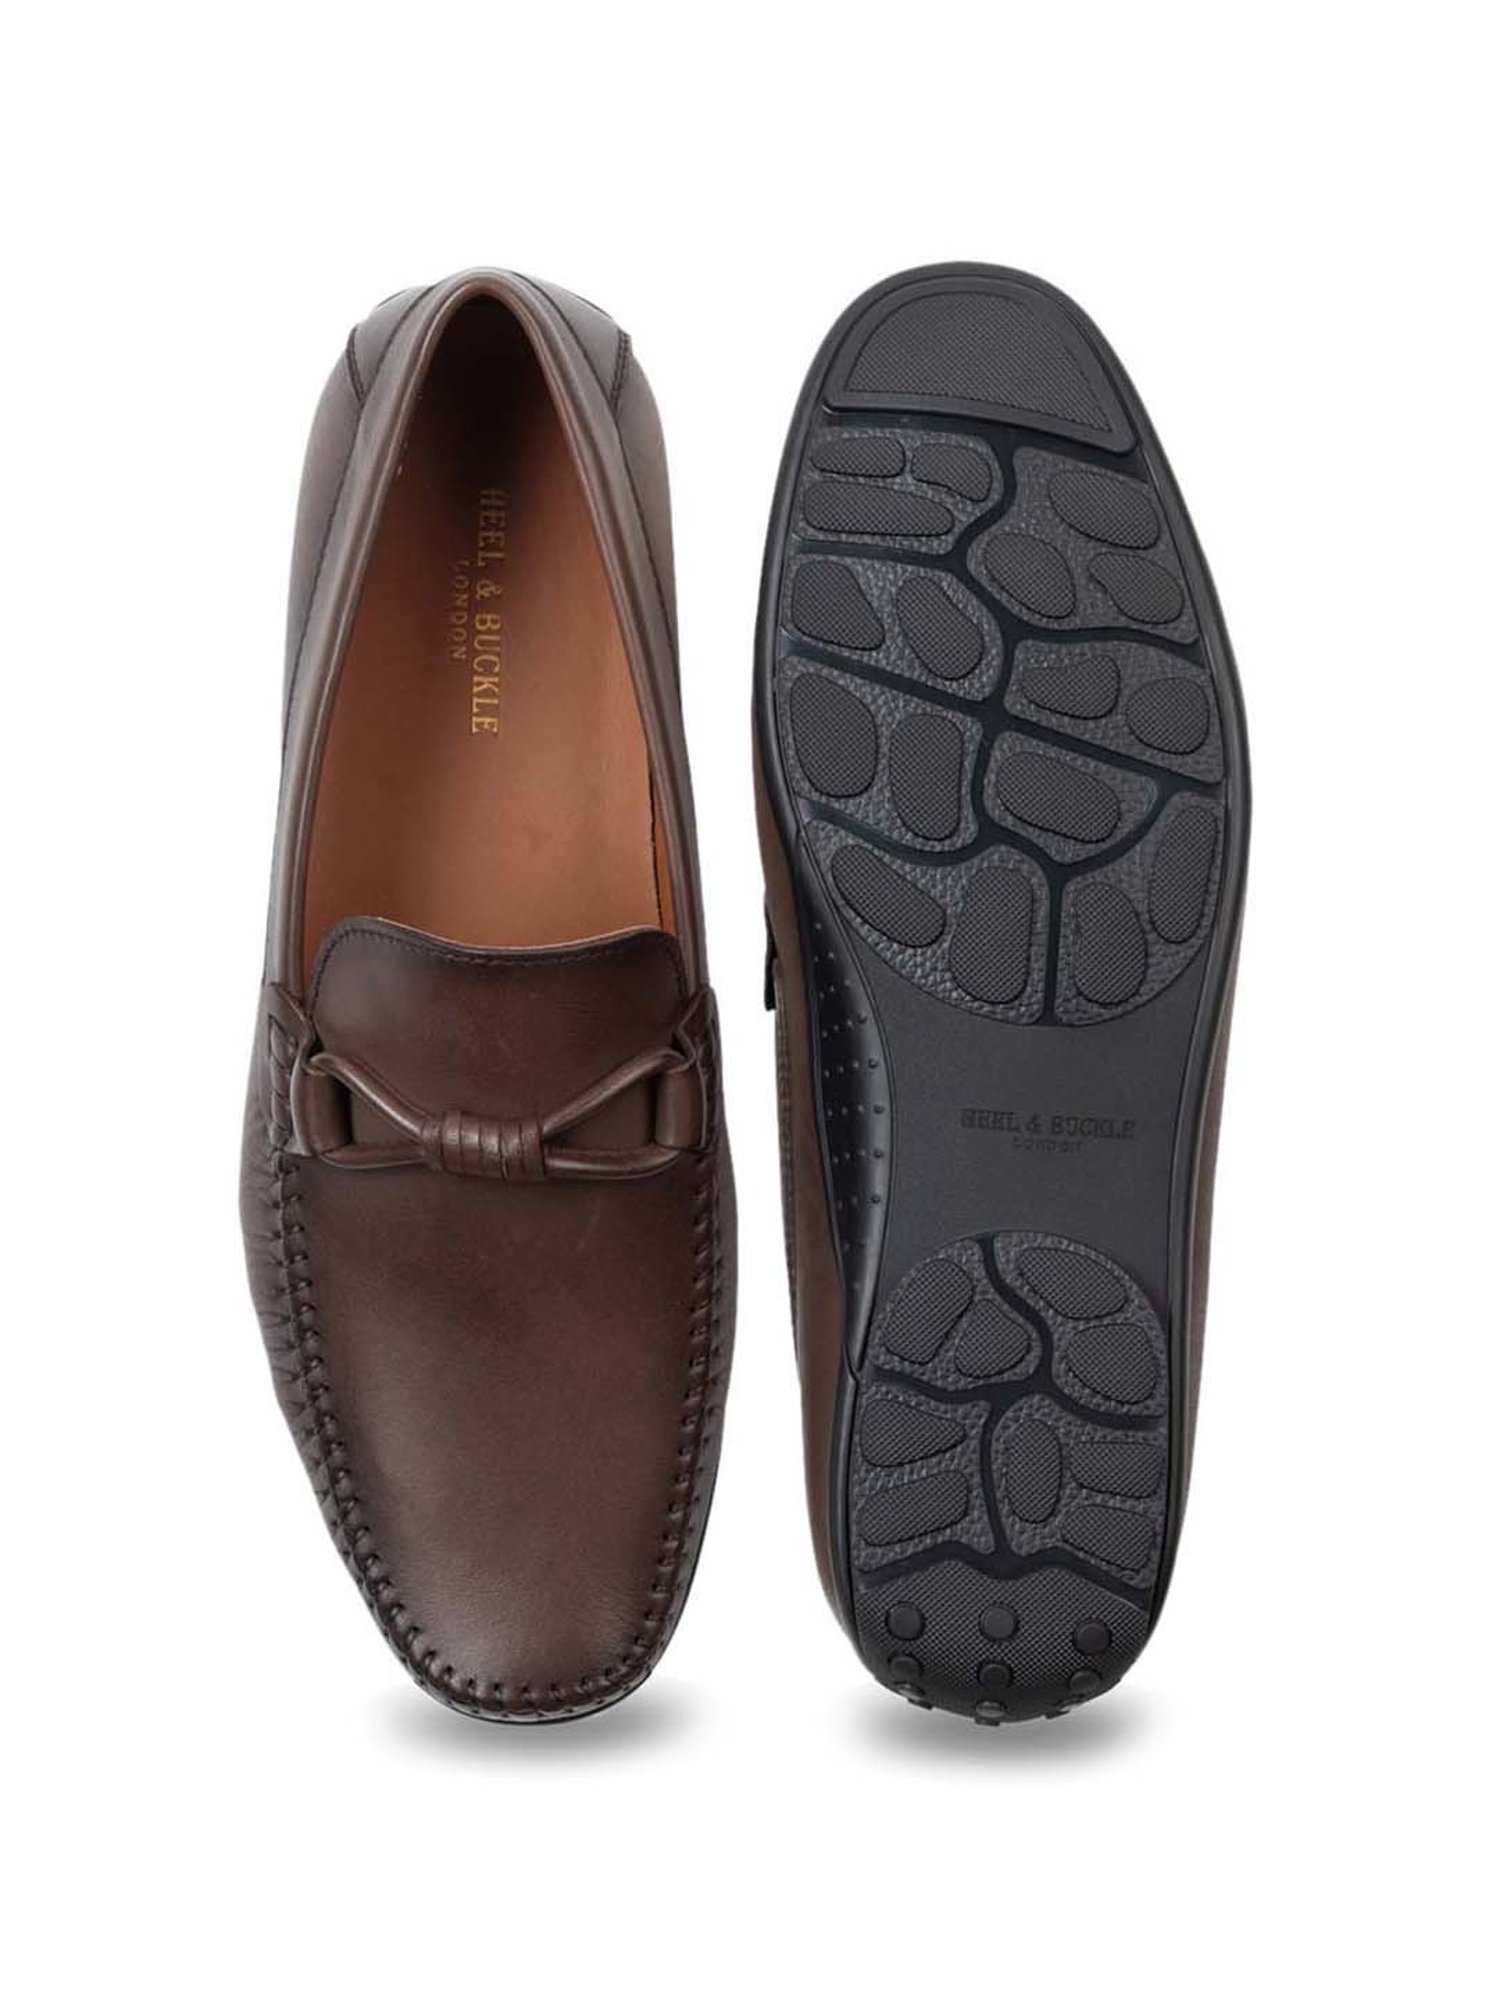 Heel & Buckle London Men's Bare Black Slipons 5 UK (39 EU) : Amazon.in:  Shoes & Handbags